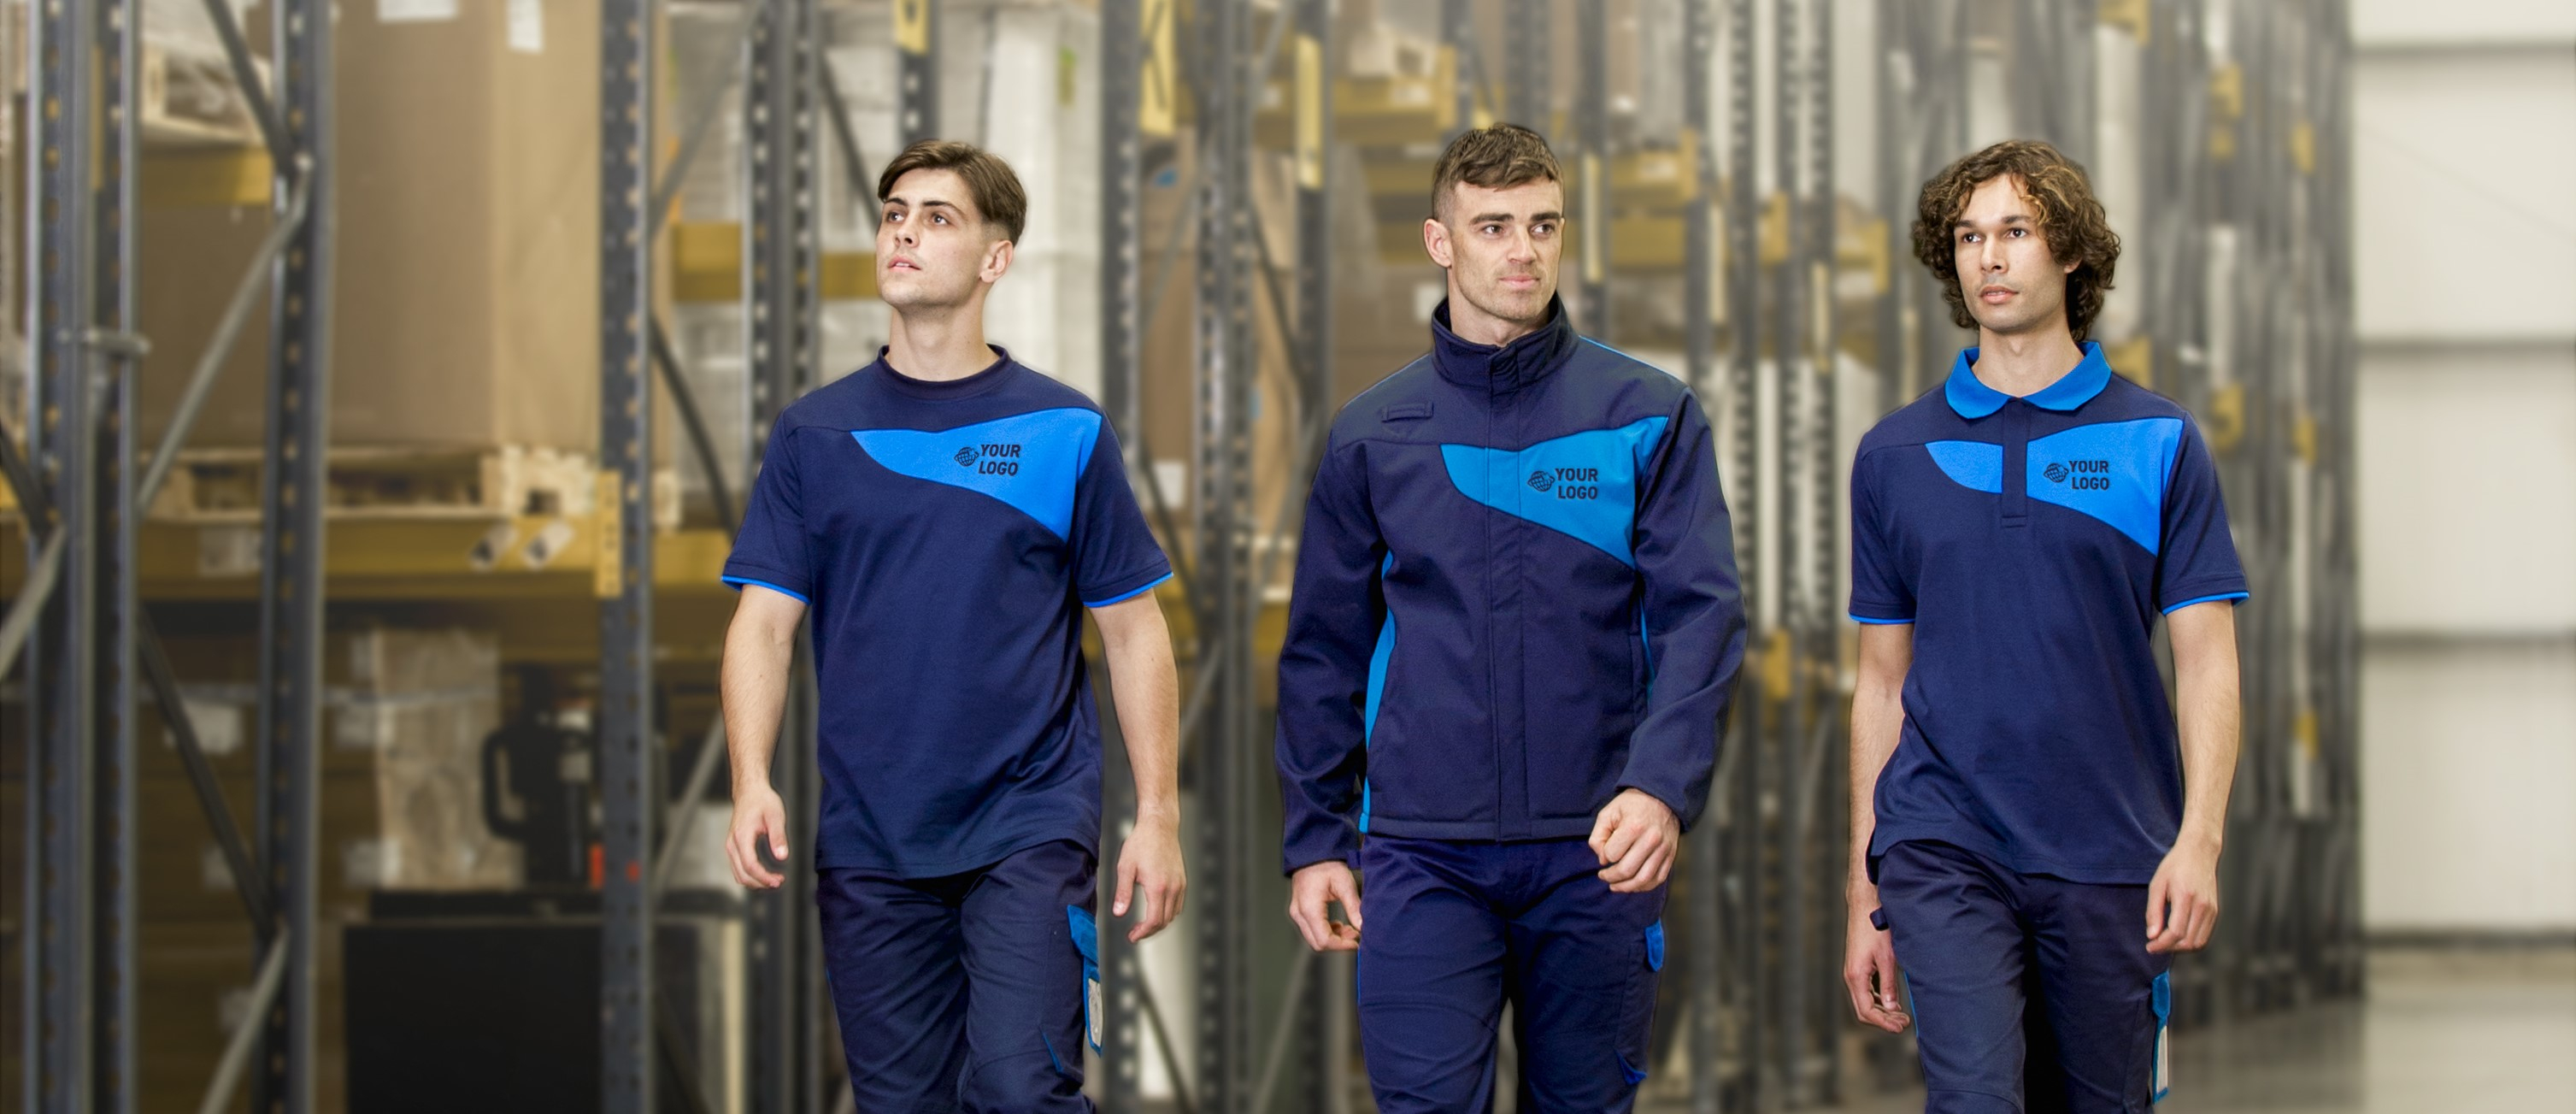 Tre giovani uomini in abiti da lavoro uniformi in diverse tonalità di blu. Sullo sfondo sono visibili gli scaffali di stoccaggio e il logo del produttore di abbigliamento da lavoro Portwest si trova nella parte in basso a sinistra dell'immagine. C'è un collegamento all'intera collezione PW2.